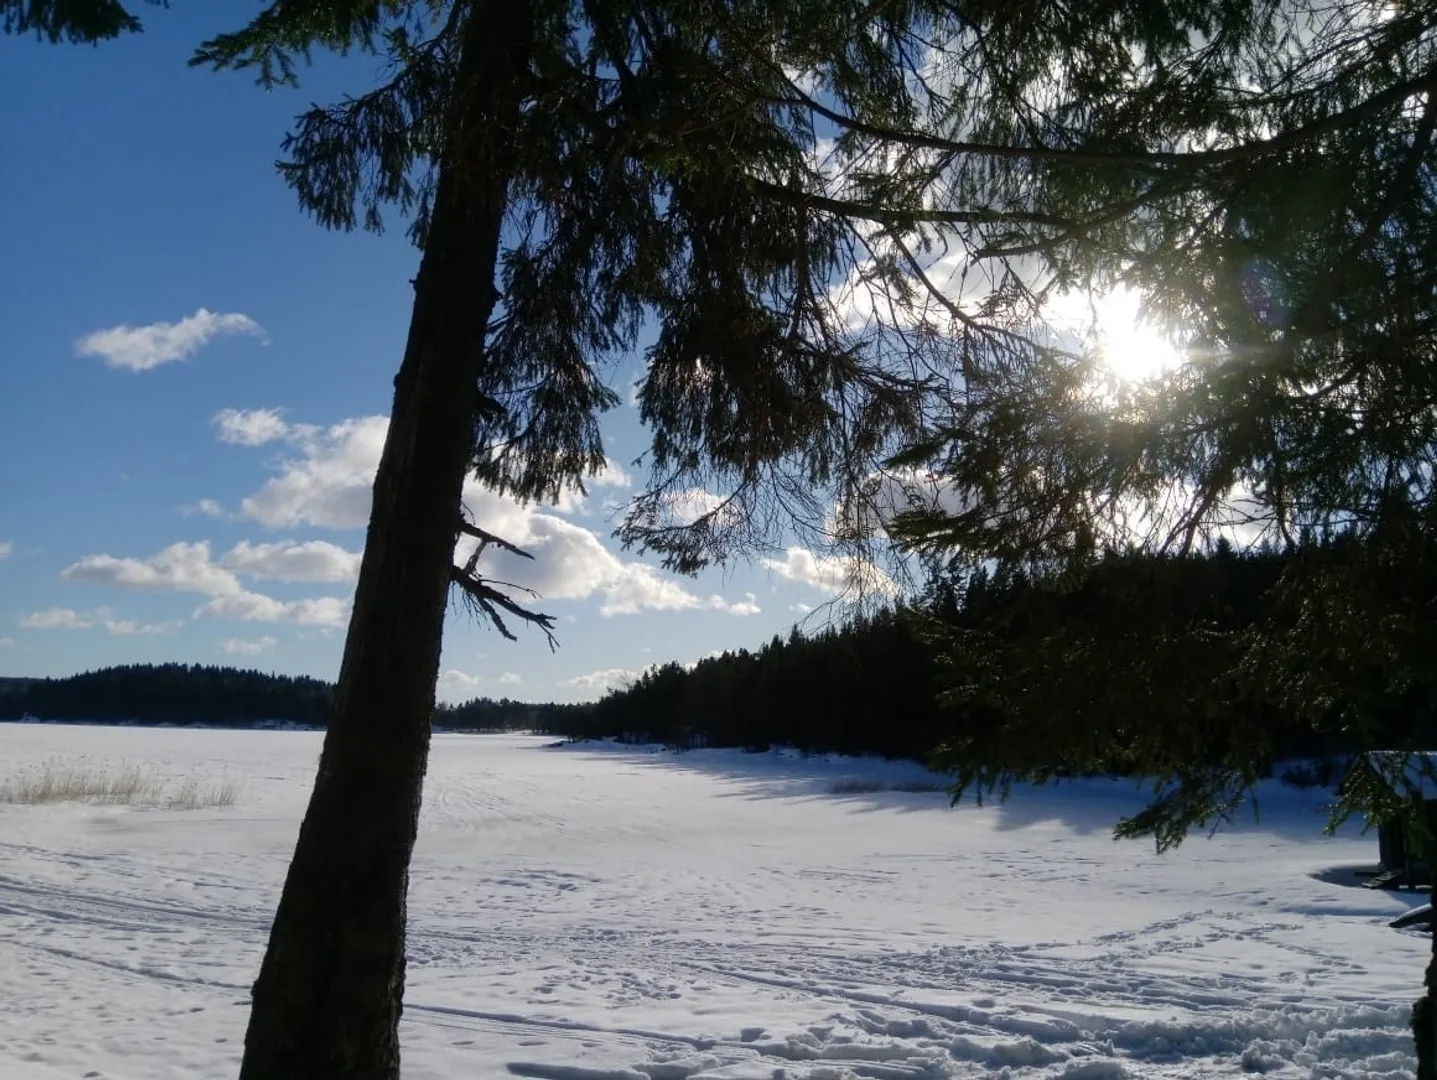 Ладожское озеро зимой, в 400м от дома по хорошей дороге